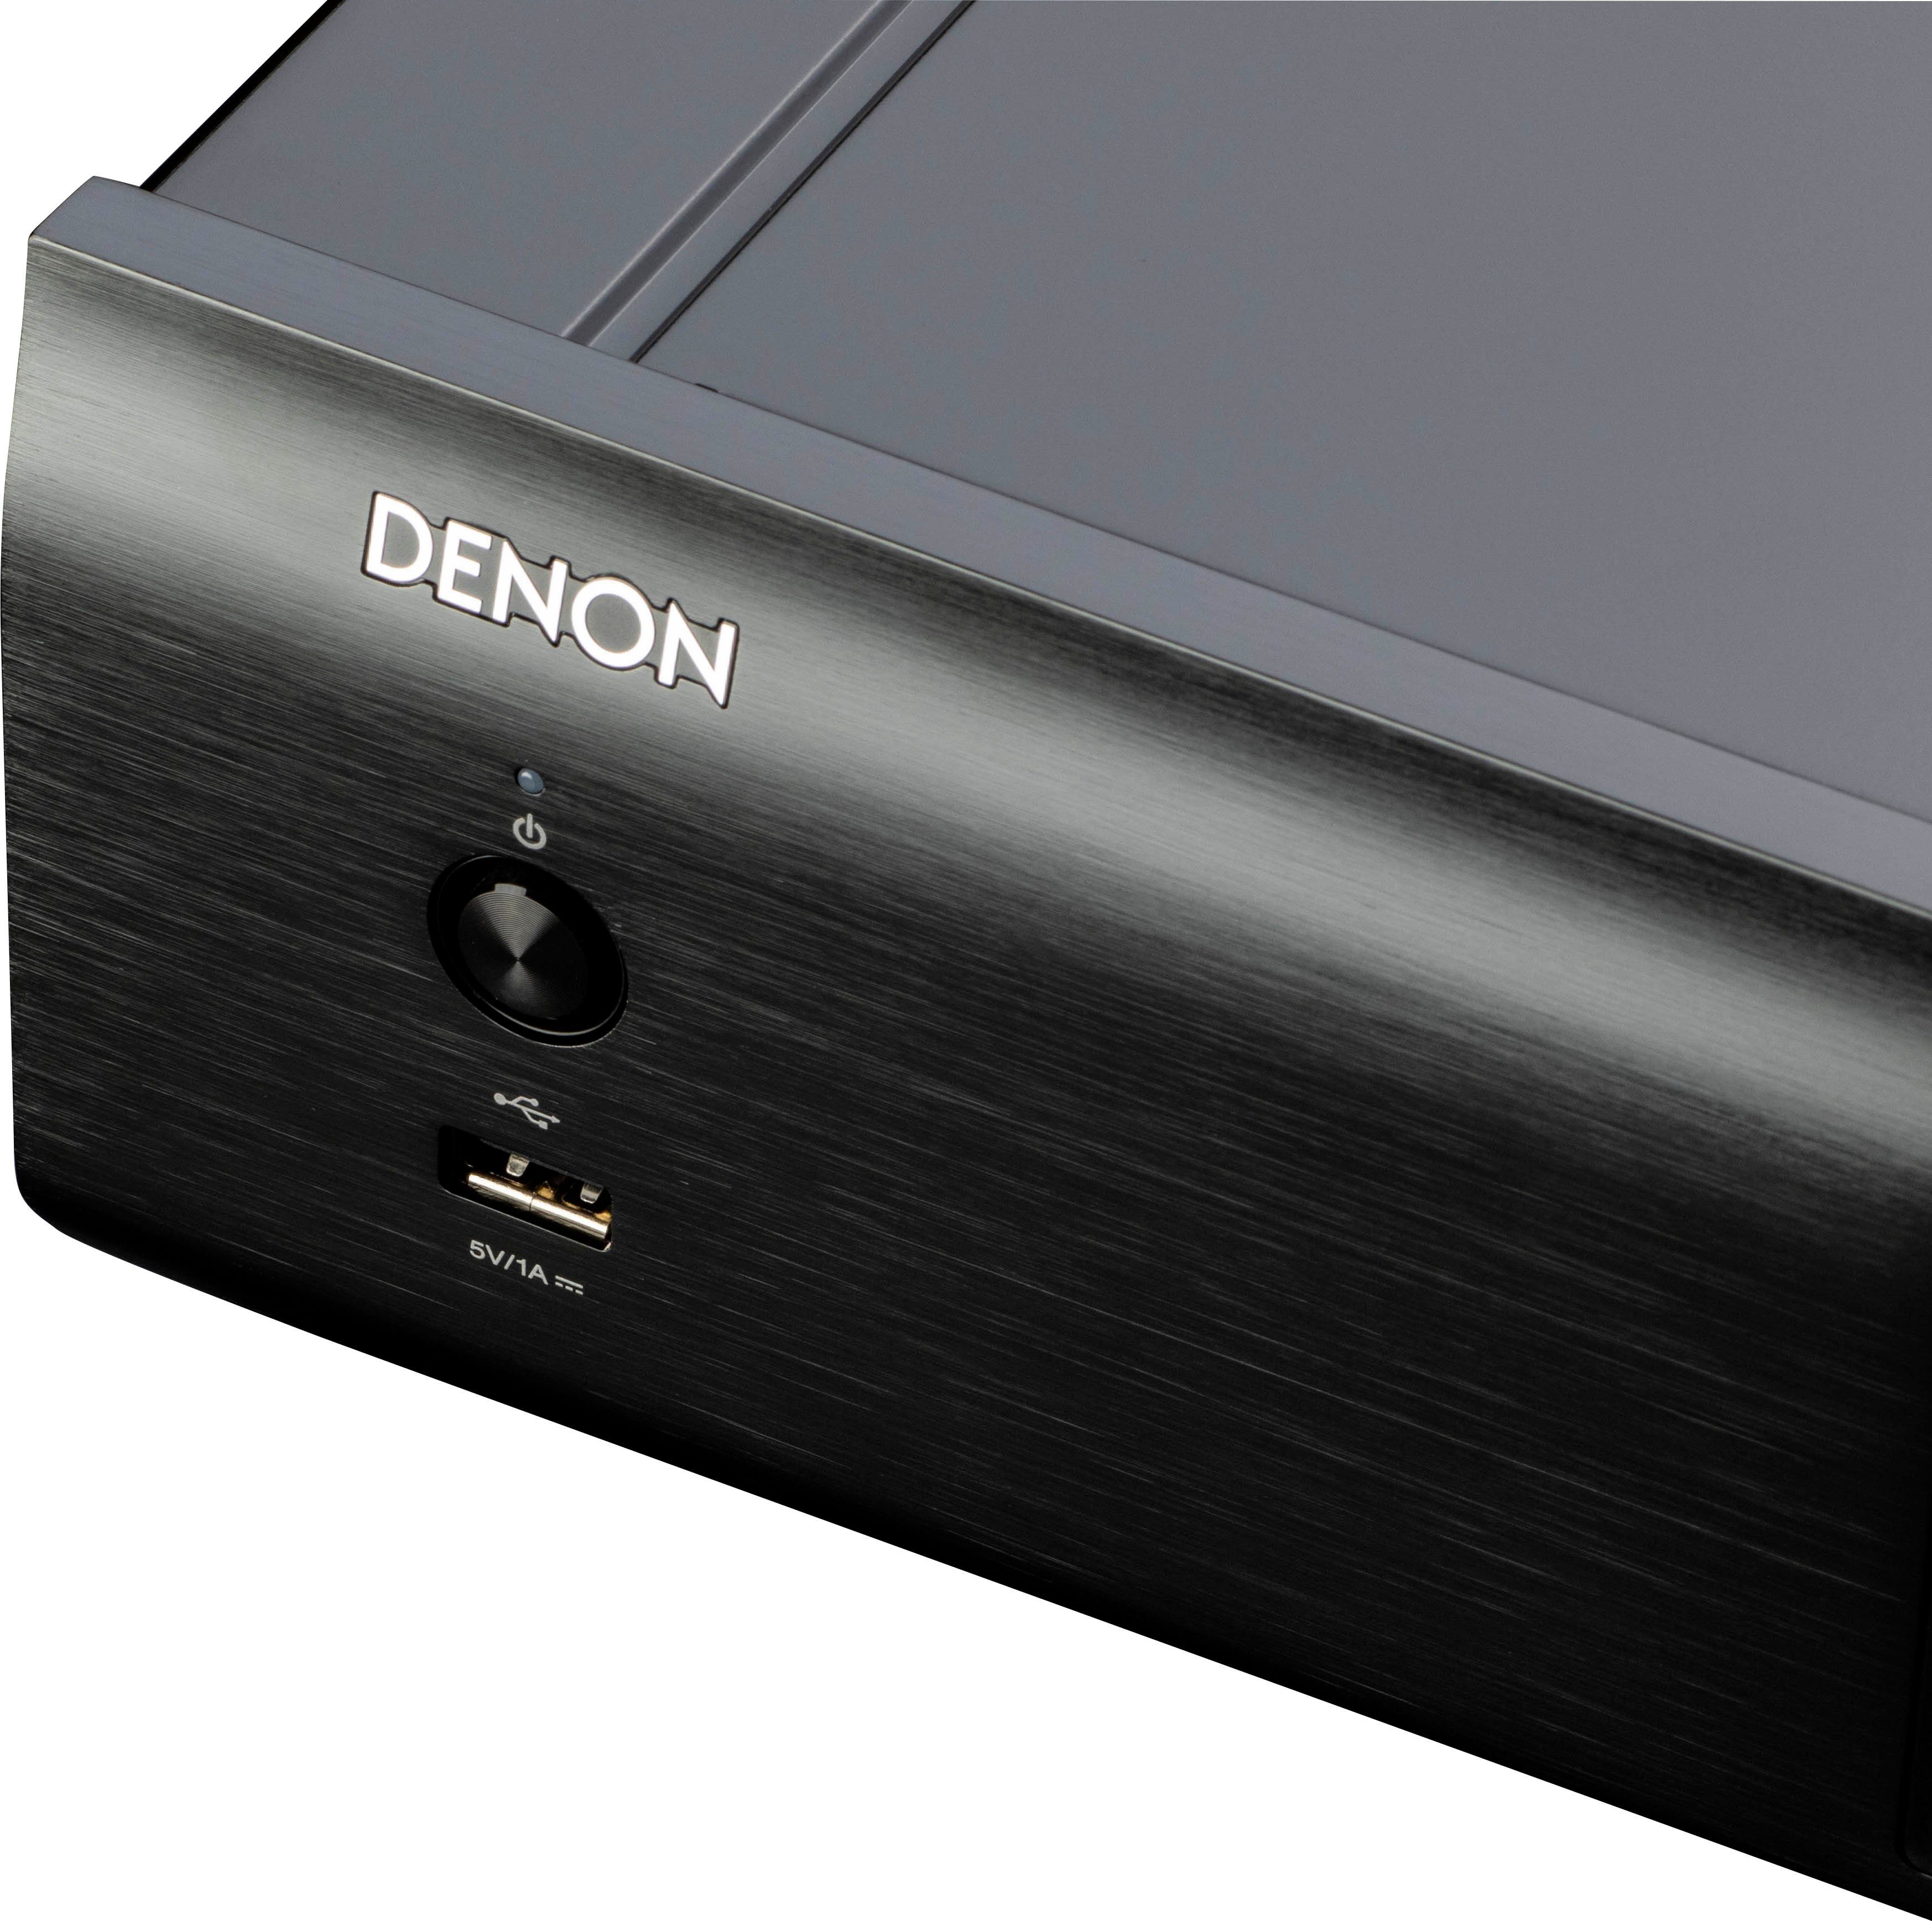 CD-Player DCD-900NE Denon schwarz (USB-Audiowiedergabe)